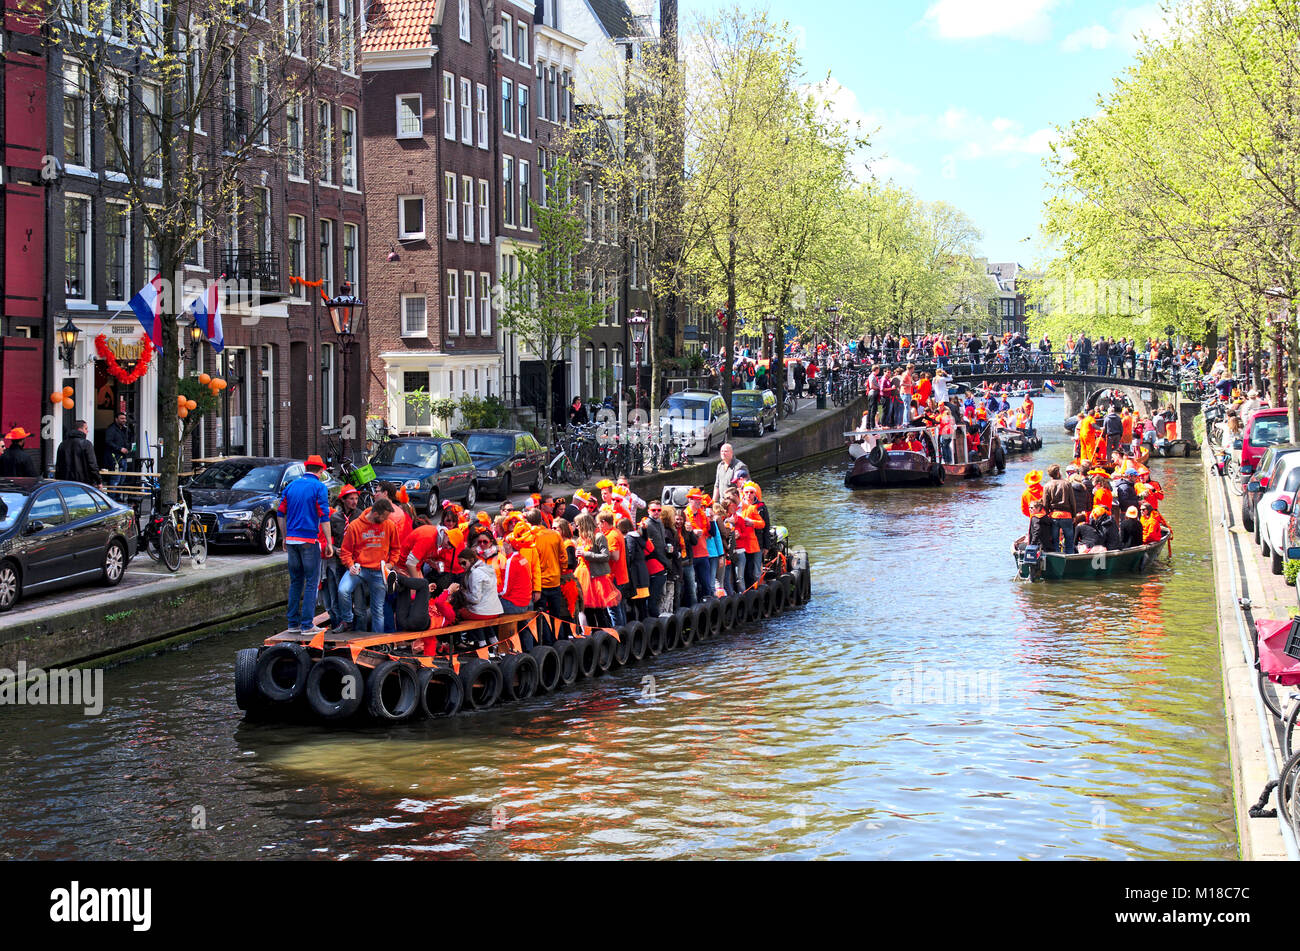 Una scena su un canale di Amsterdam su un re della giornata. Molte barche nel canale tutto pieno di celebrare persone che indossano il colore arancione vestiti. Foto Stock